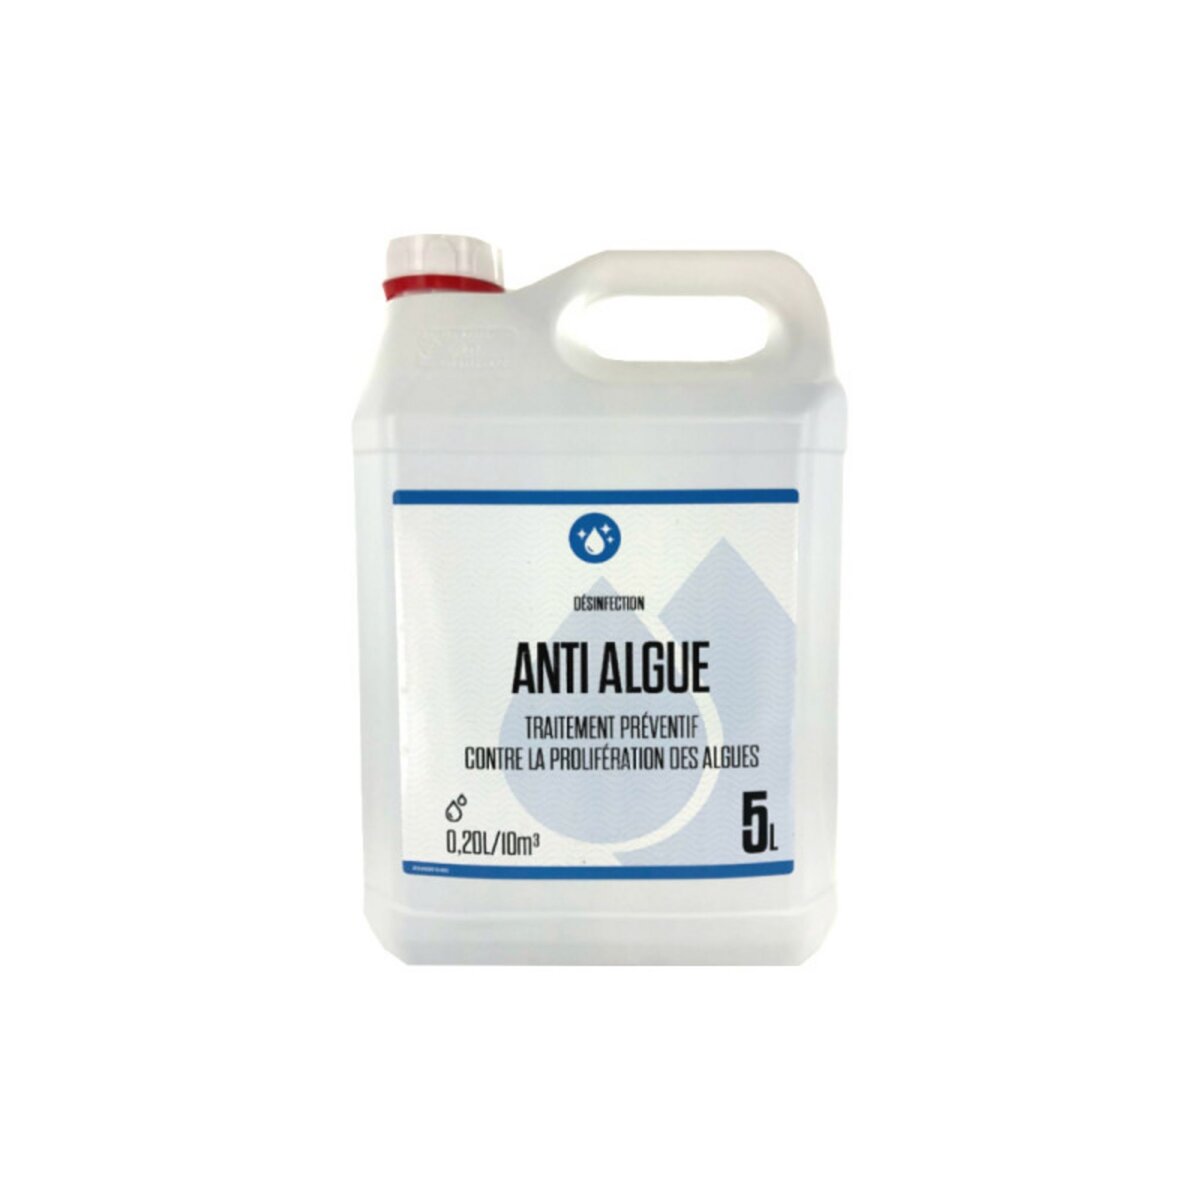 ESPACE-BRICOLAGE Anti-algue - triple action 0,20/10m3